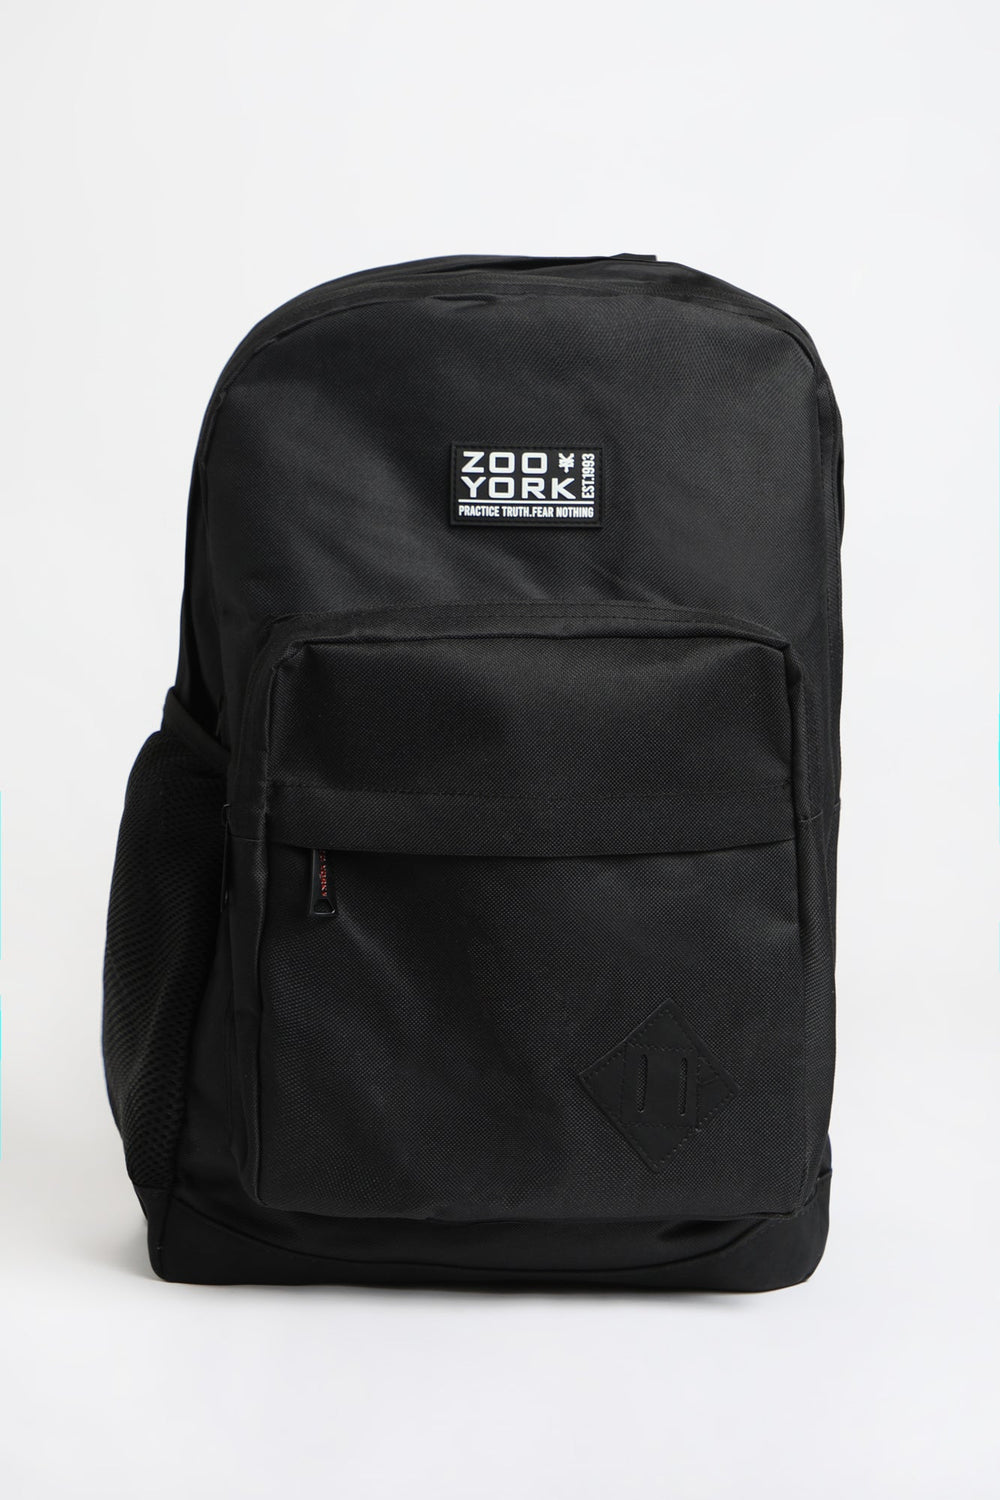 Zoo York Solid Black Backpack Black